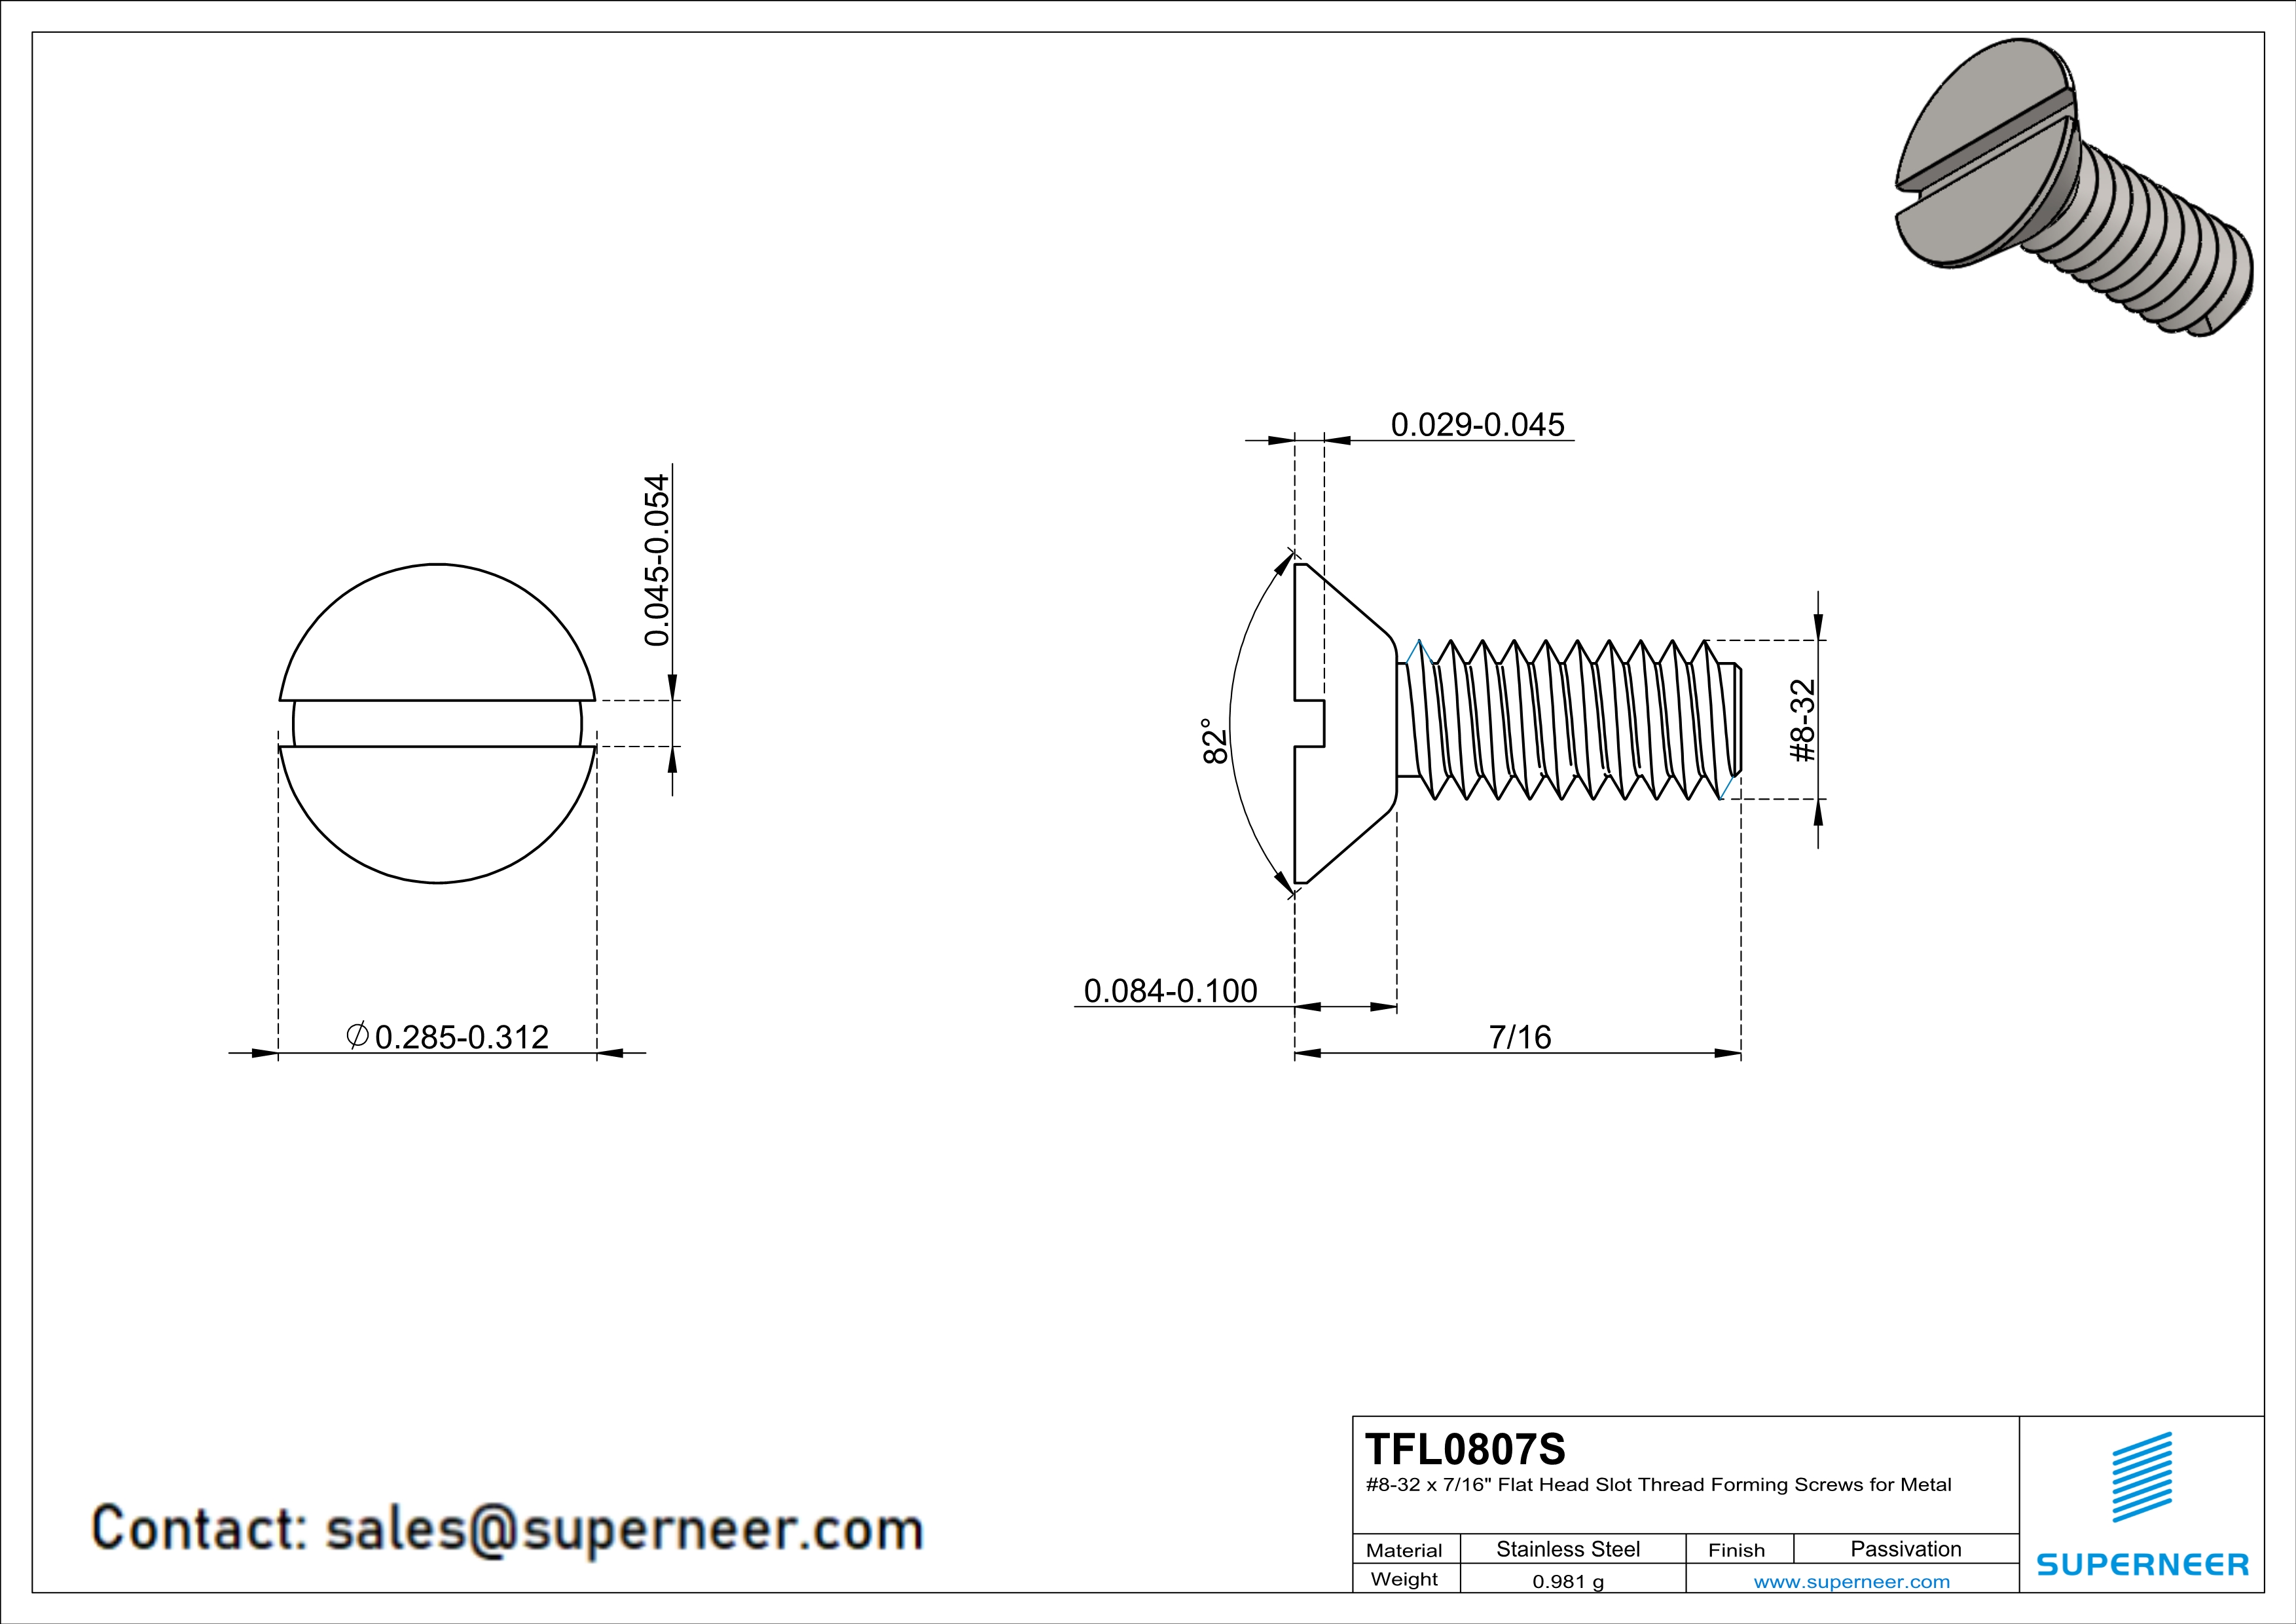 8-32 × 7/16 Flat Head Slot Thread Forming  Screws for Metal  SUS304 Stainless Steel Inox